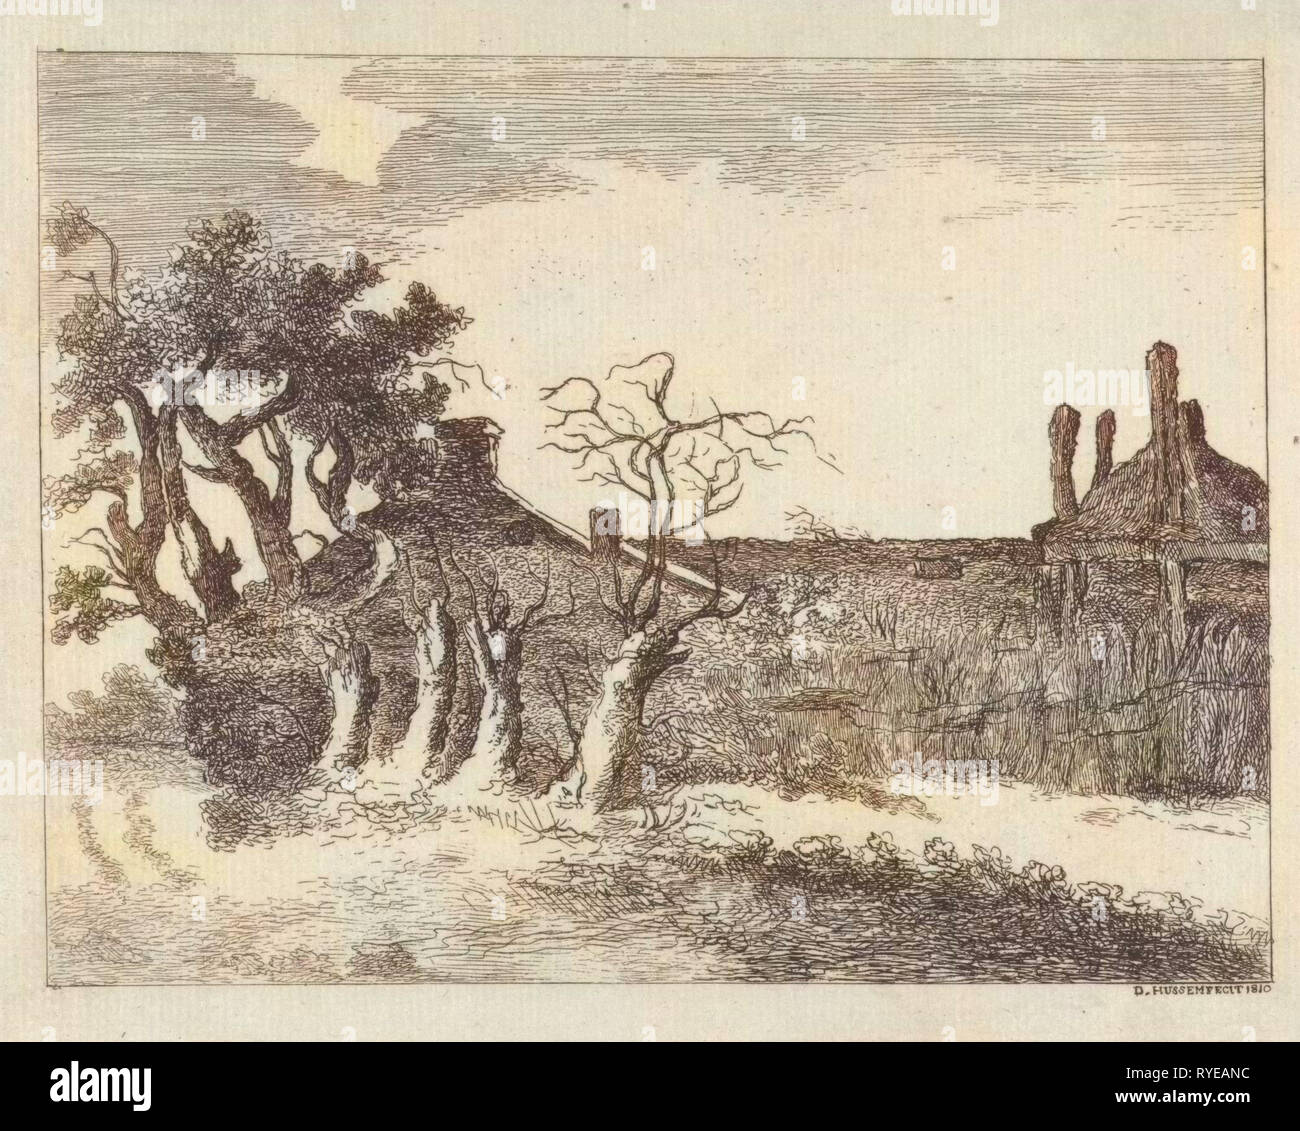 Saules à ferme, Dirk Hussem, 1810 Banque D'Images